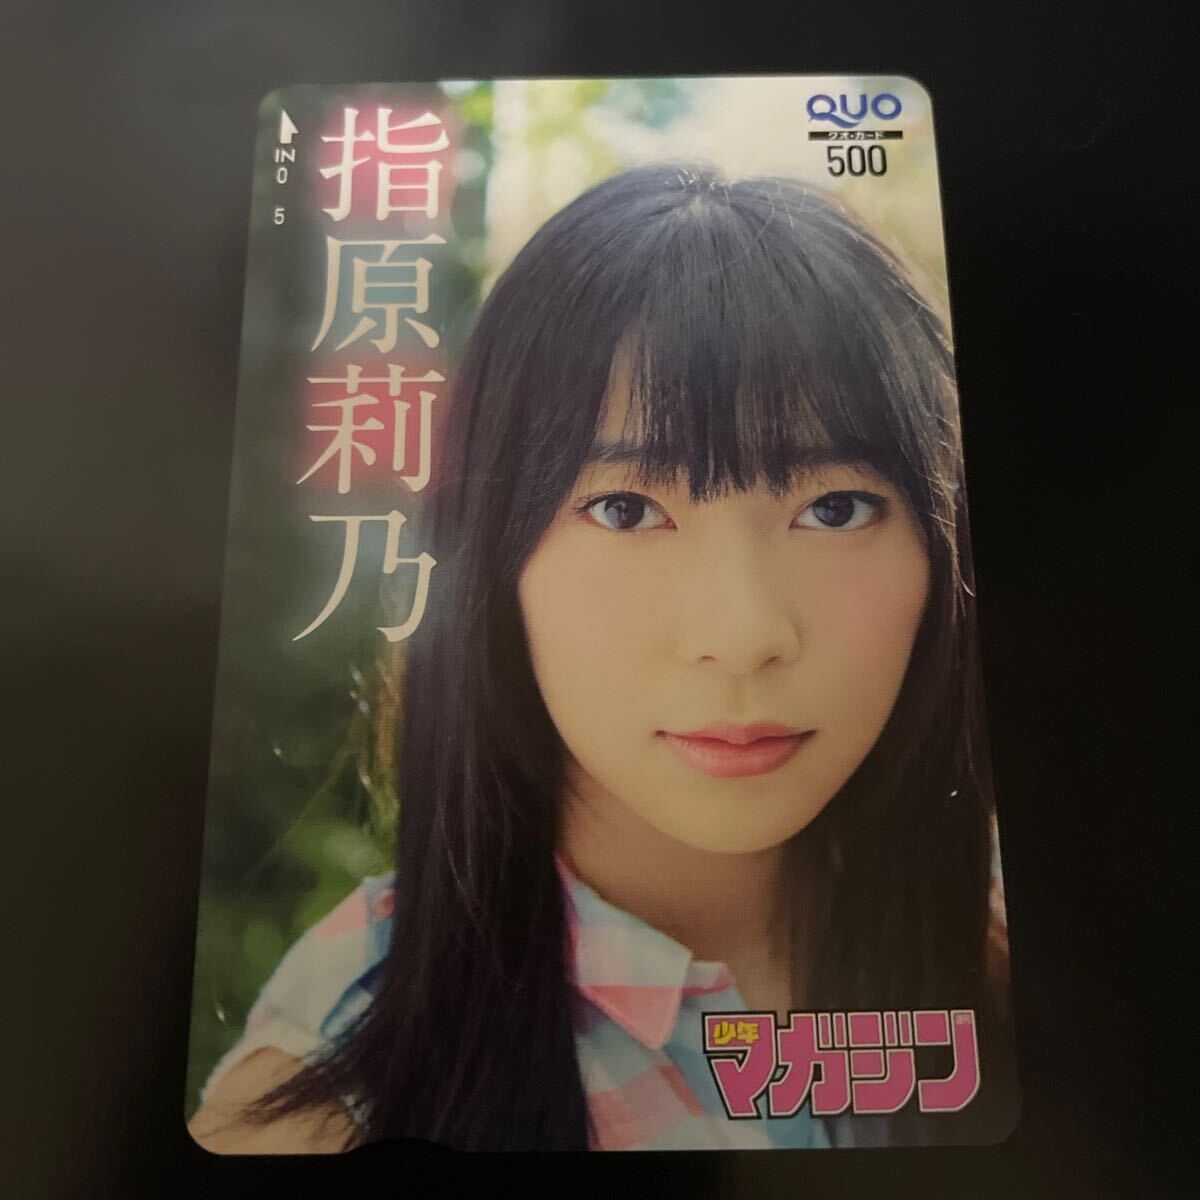  Sashihara Rino Shonen Magazine QUO card 500